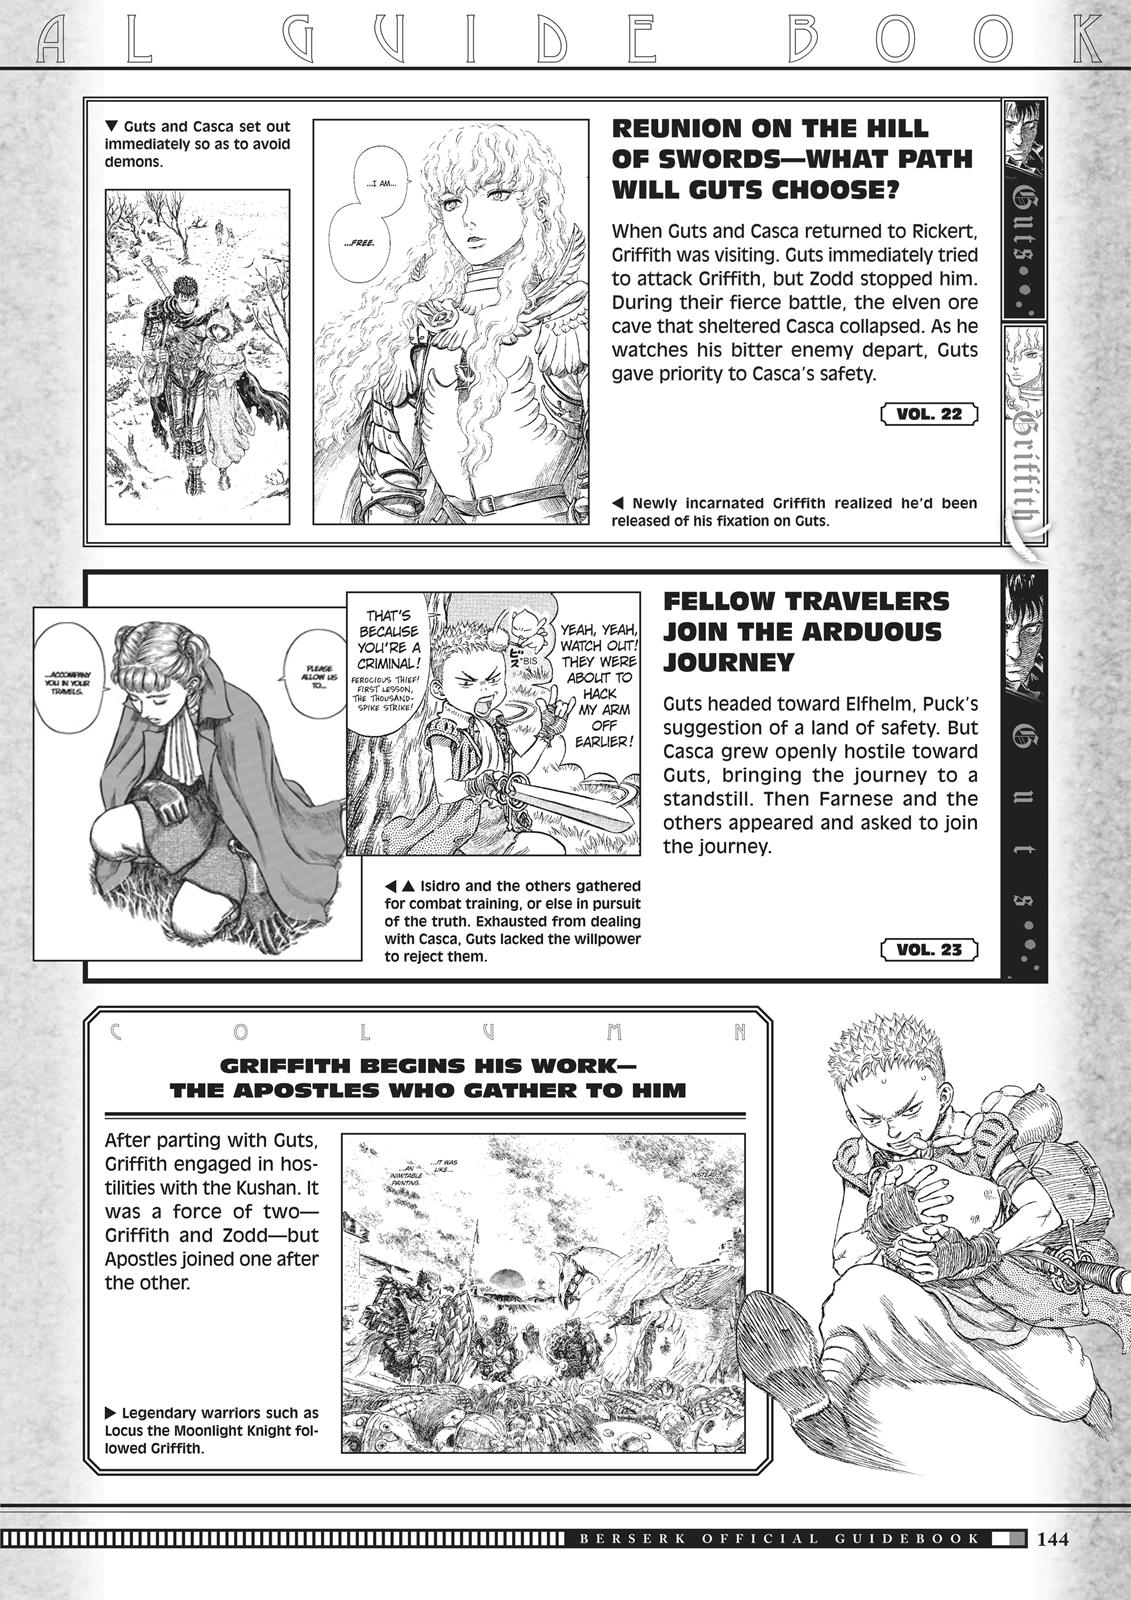 Berserk Manga Chapter 350.5 image 142